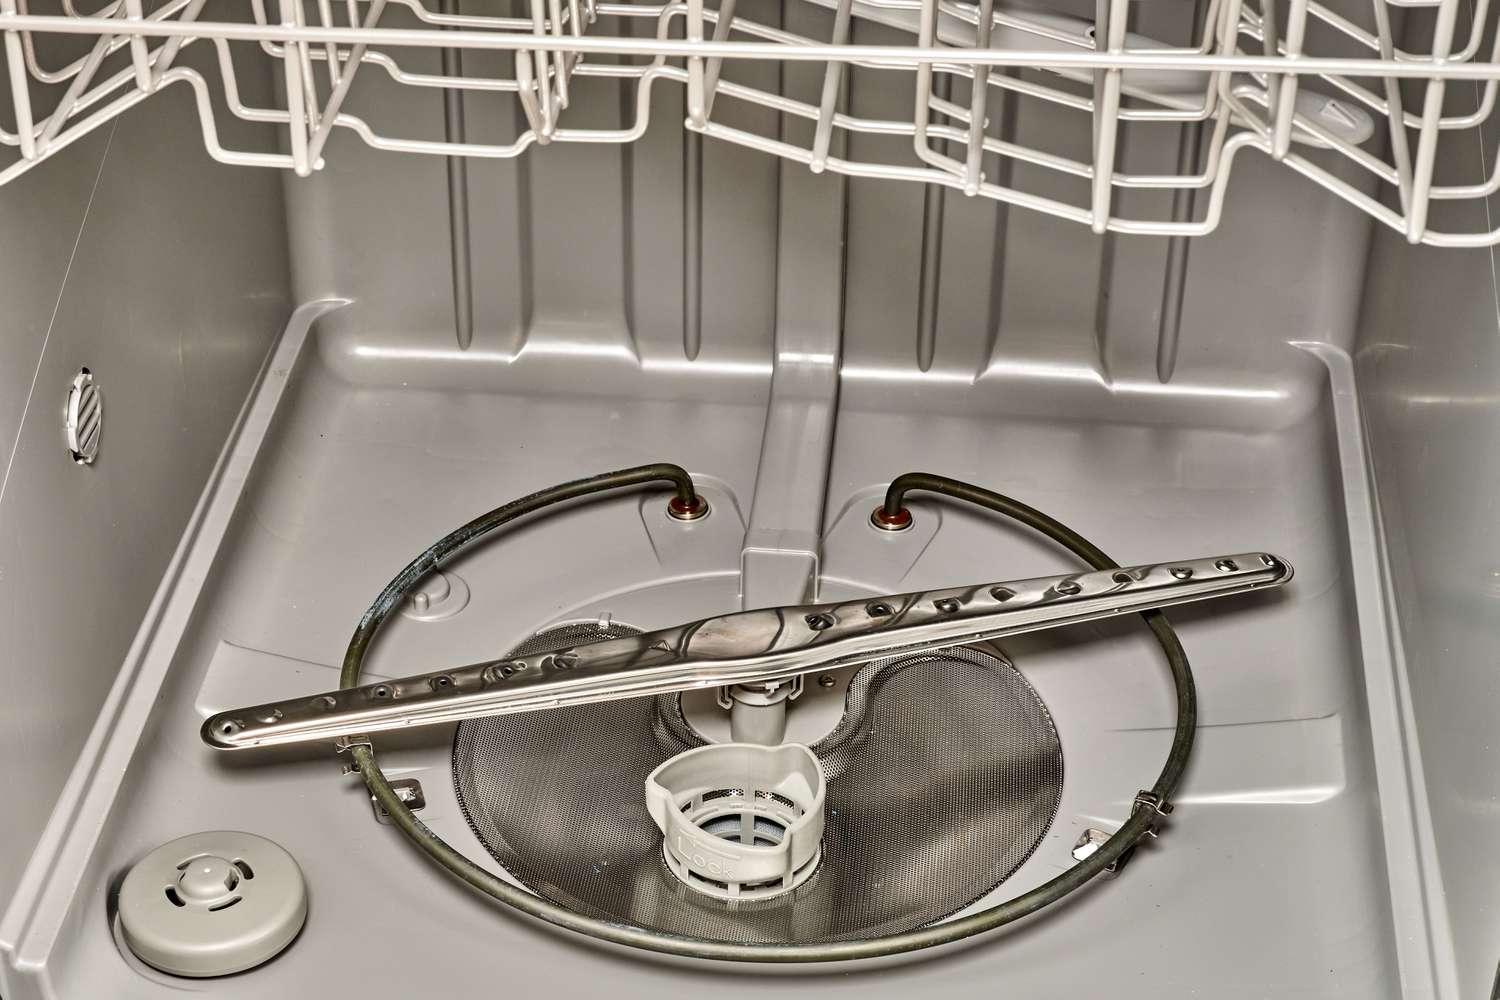 Requisitos de drenagem da máquina de lavar louça